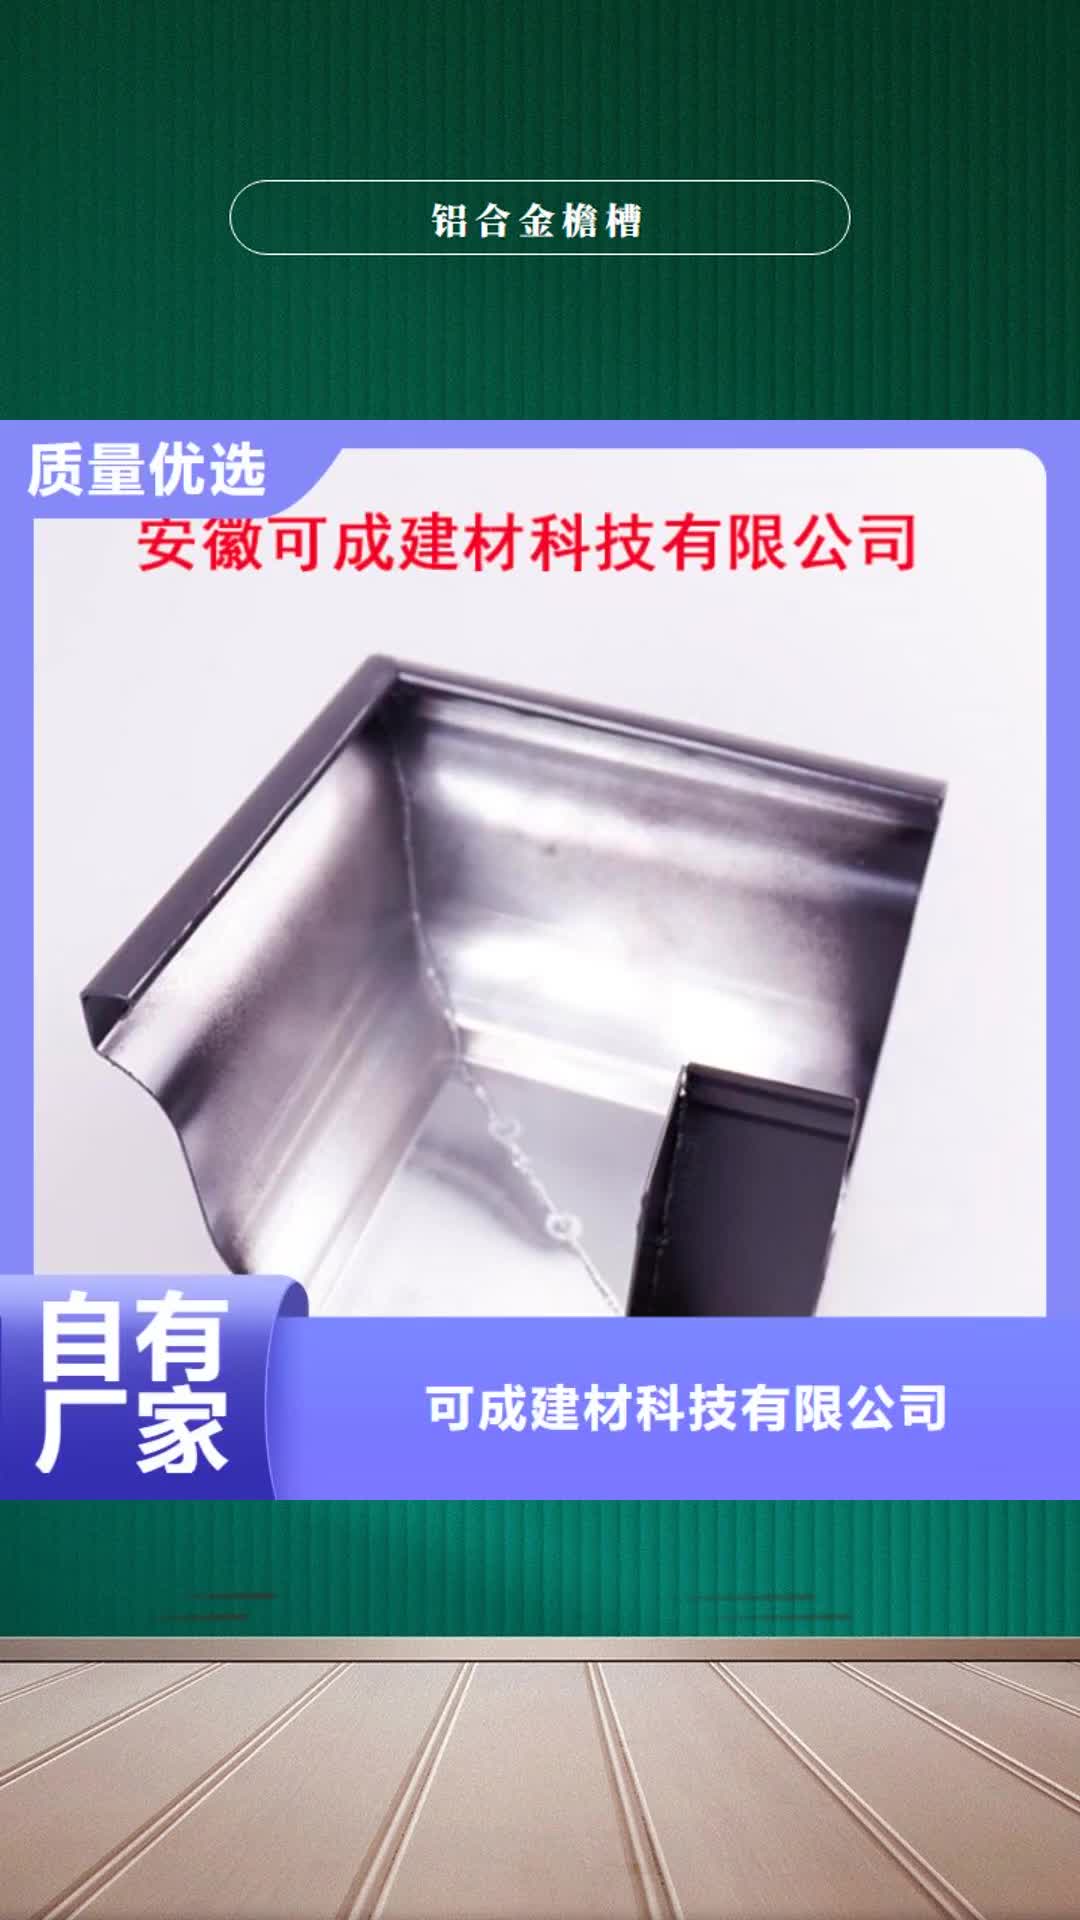 青岛【铝合金檐槽】,铝合金雨水槽优质工艺